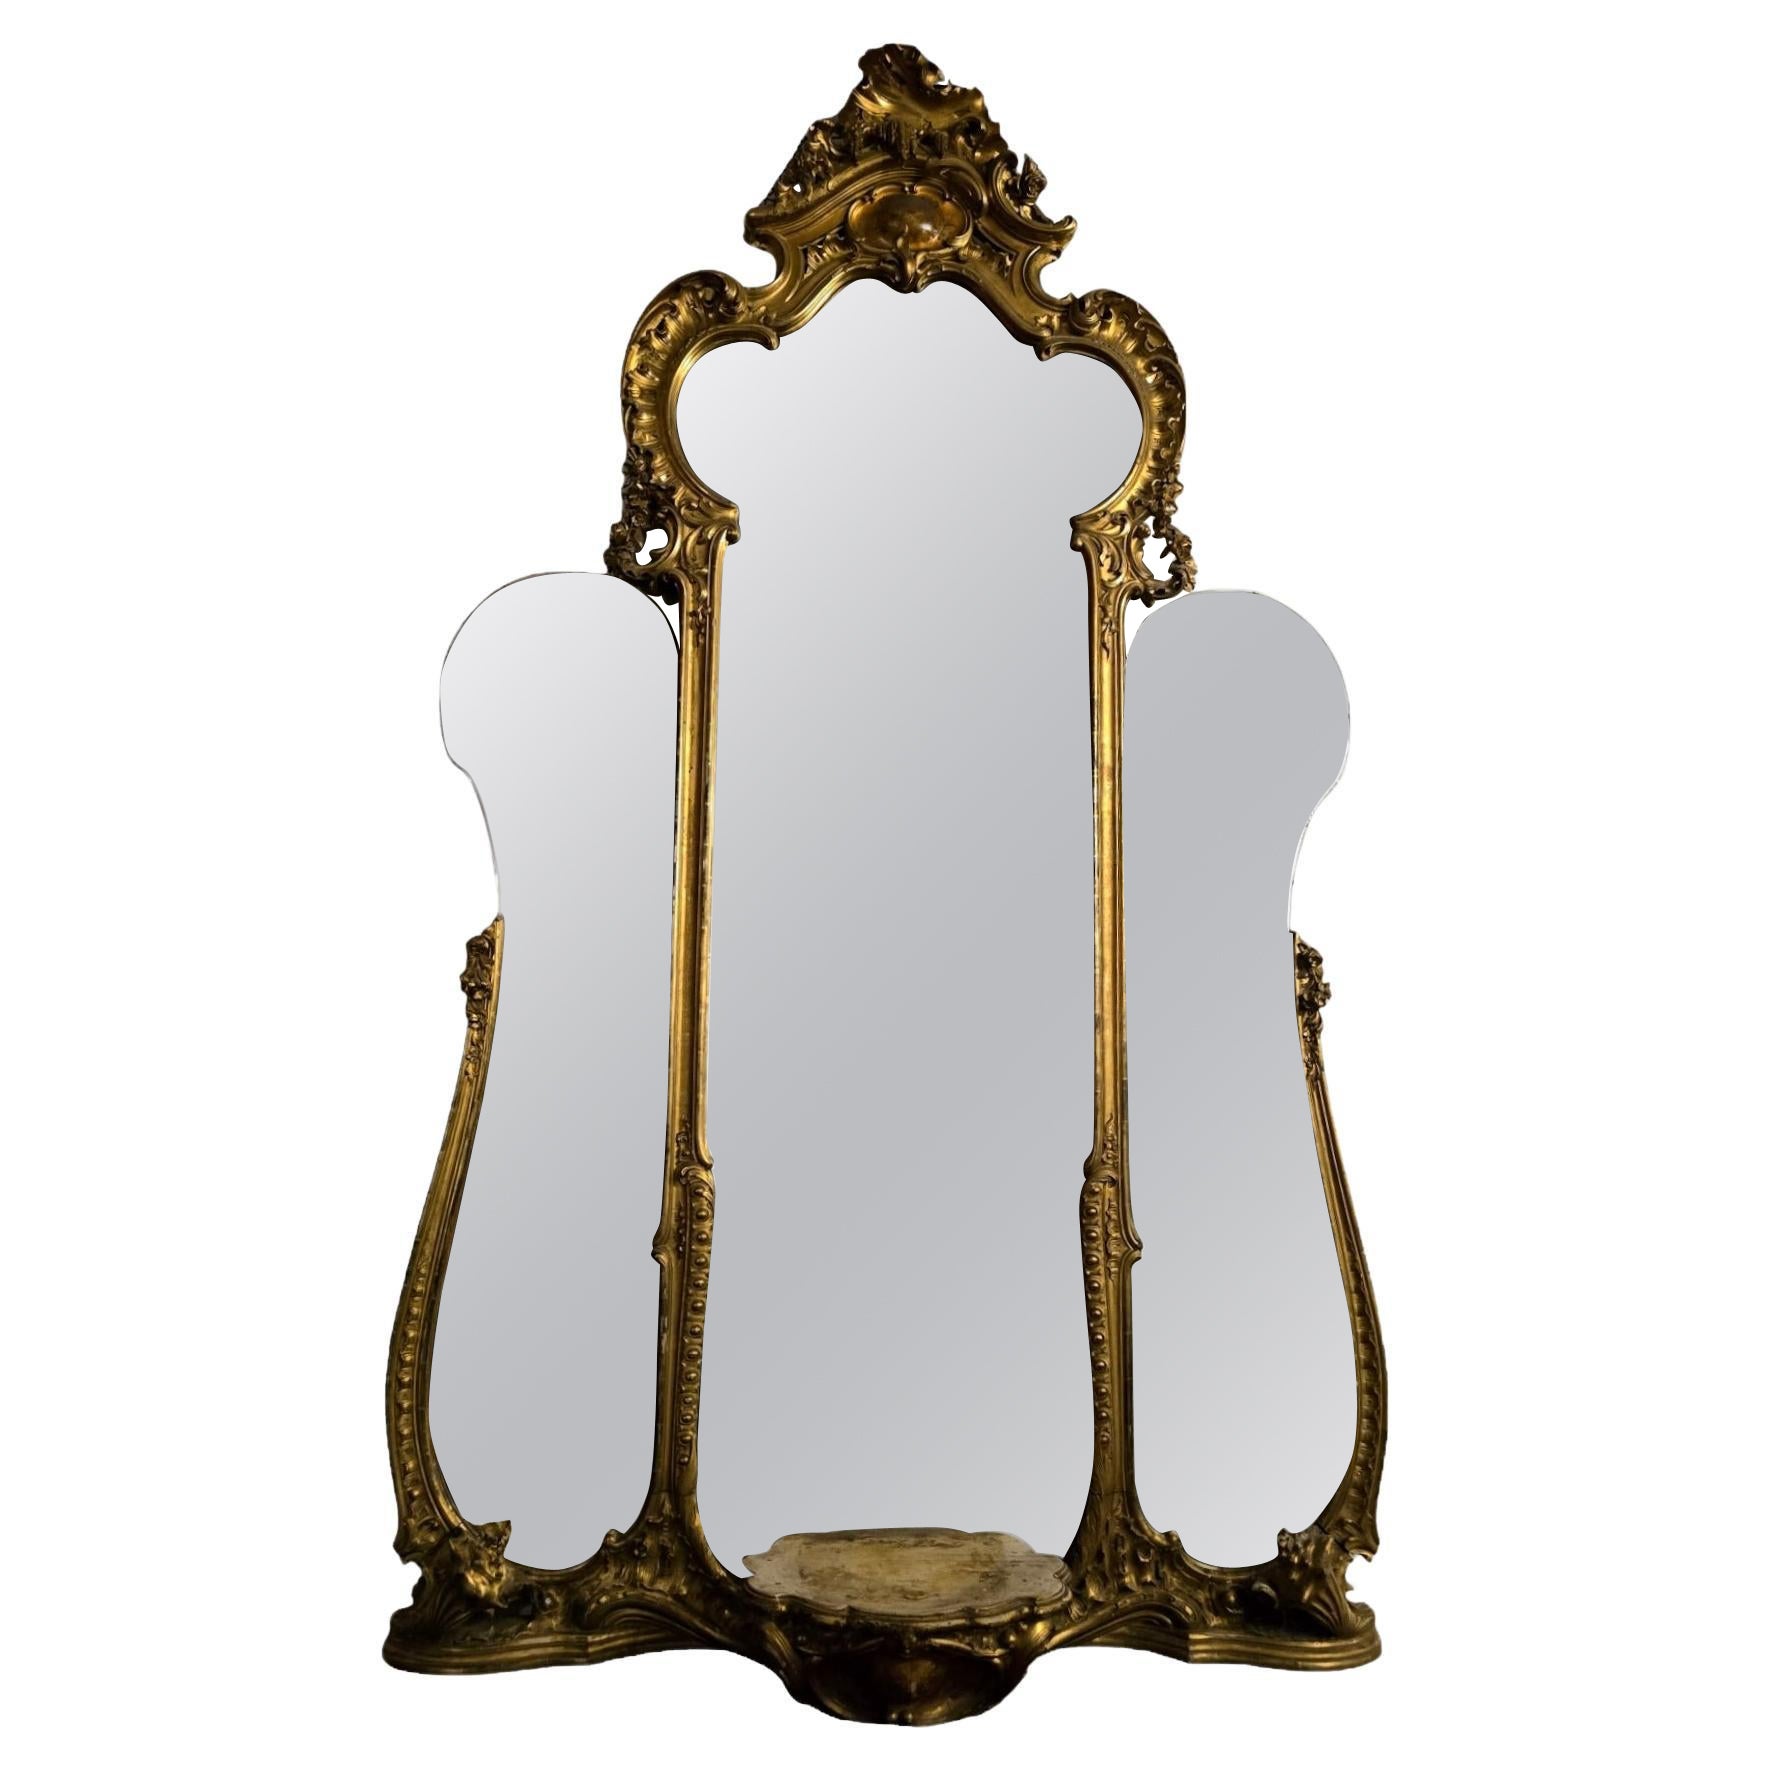 Miroir monumental en bois doré français - Un chef-d'œuvre historique de luxe